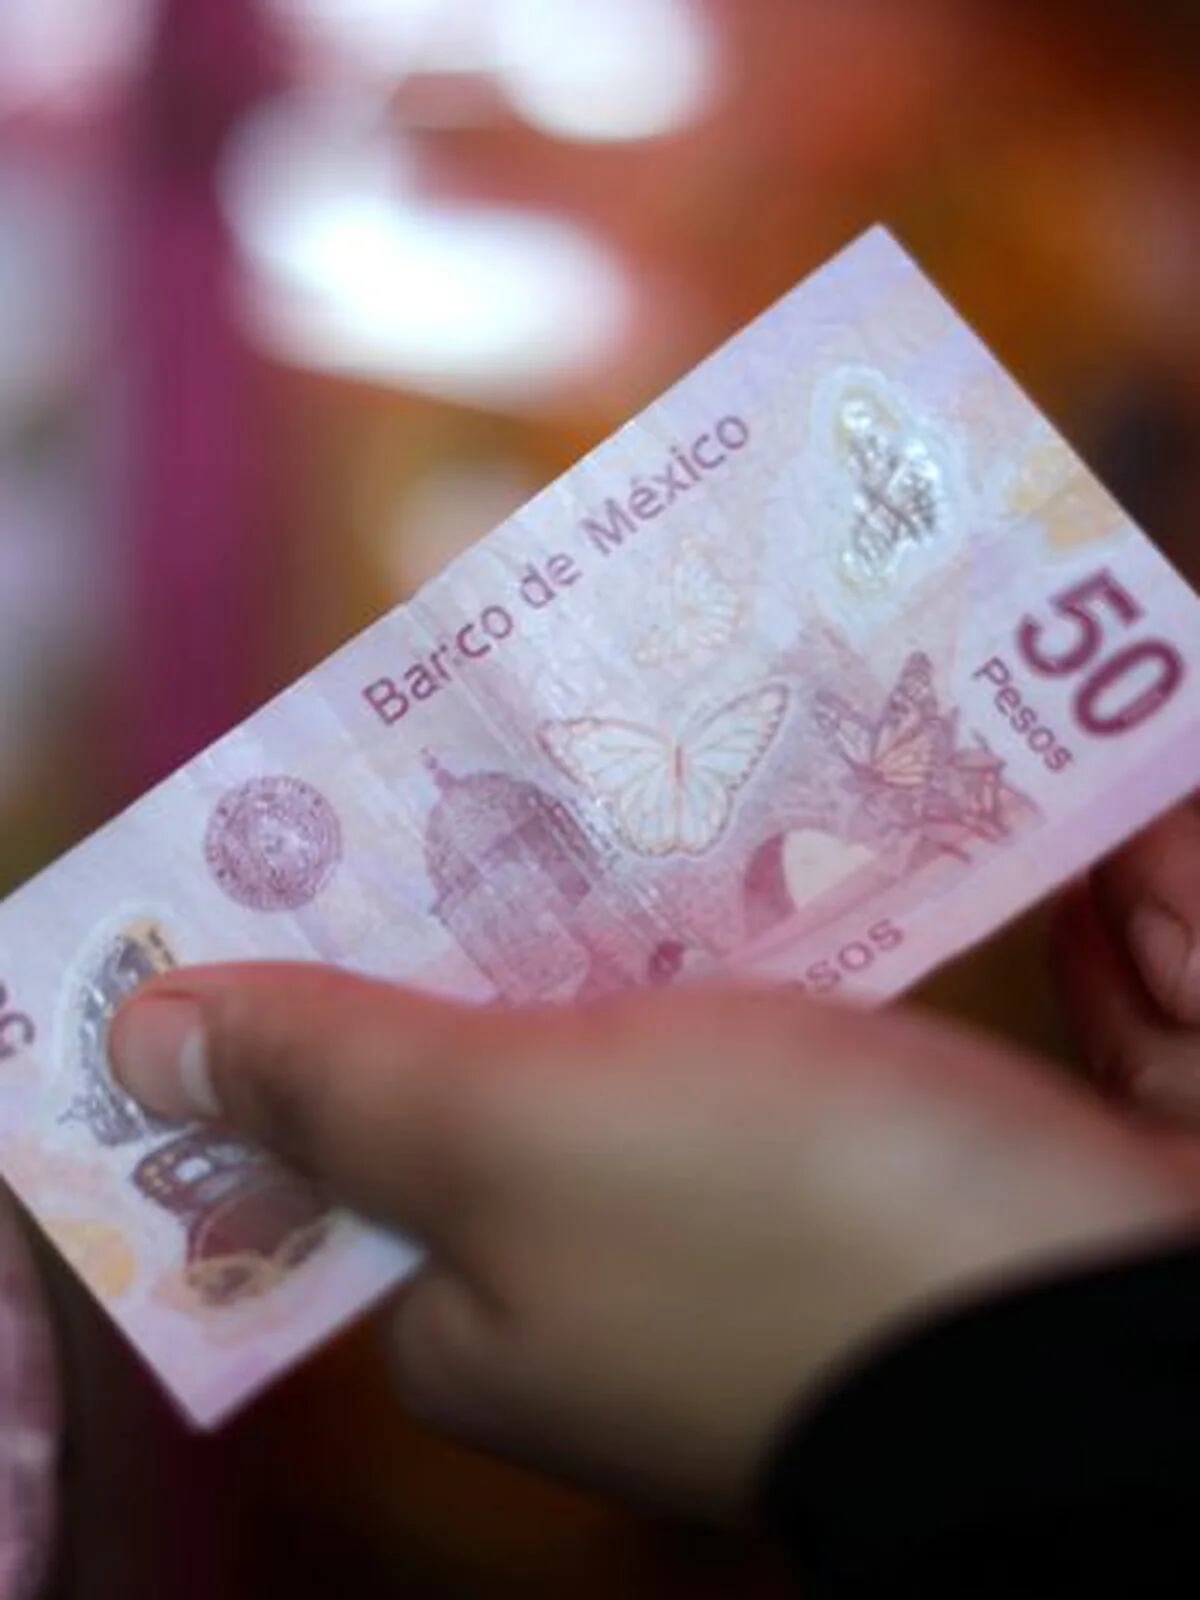 Que no te hagan 'tranza': Banxico dice si te sirven los plumones que  detectan billetes falsos – El Financiero